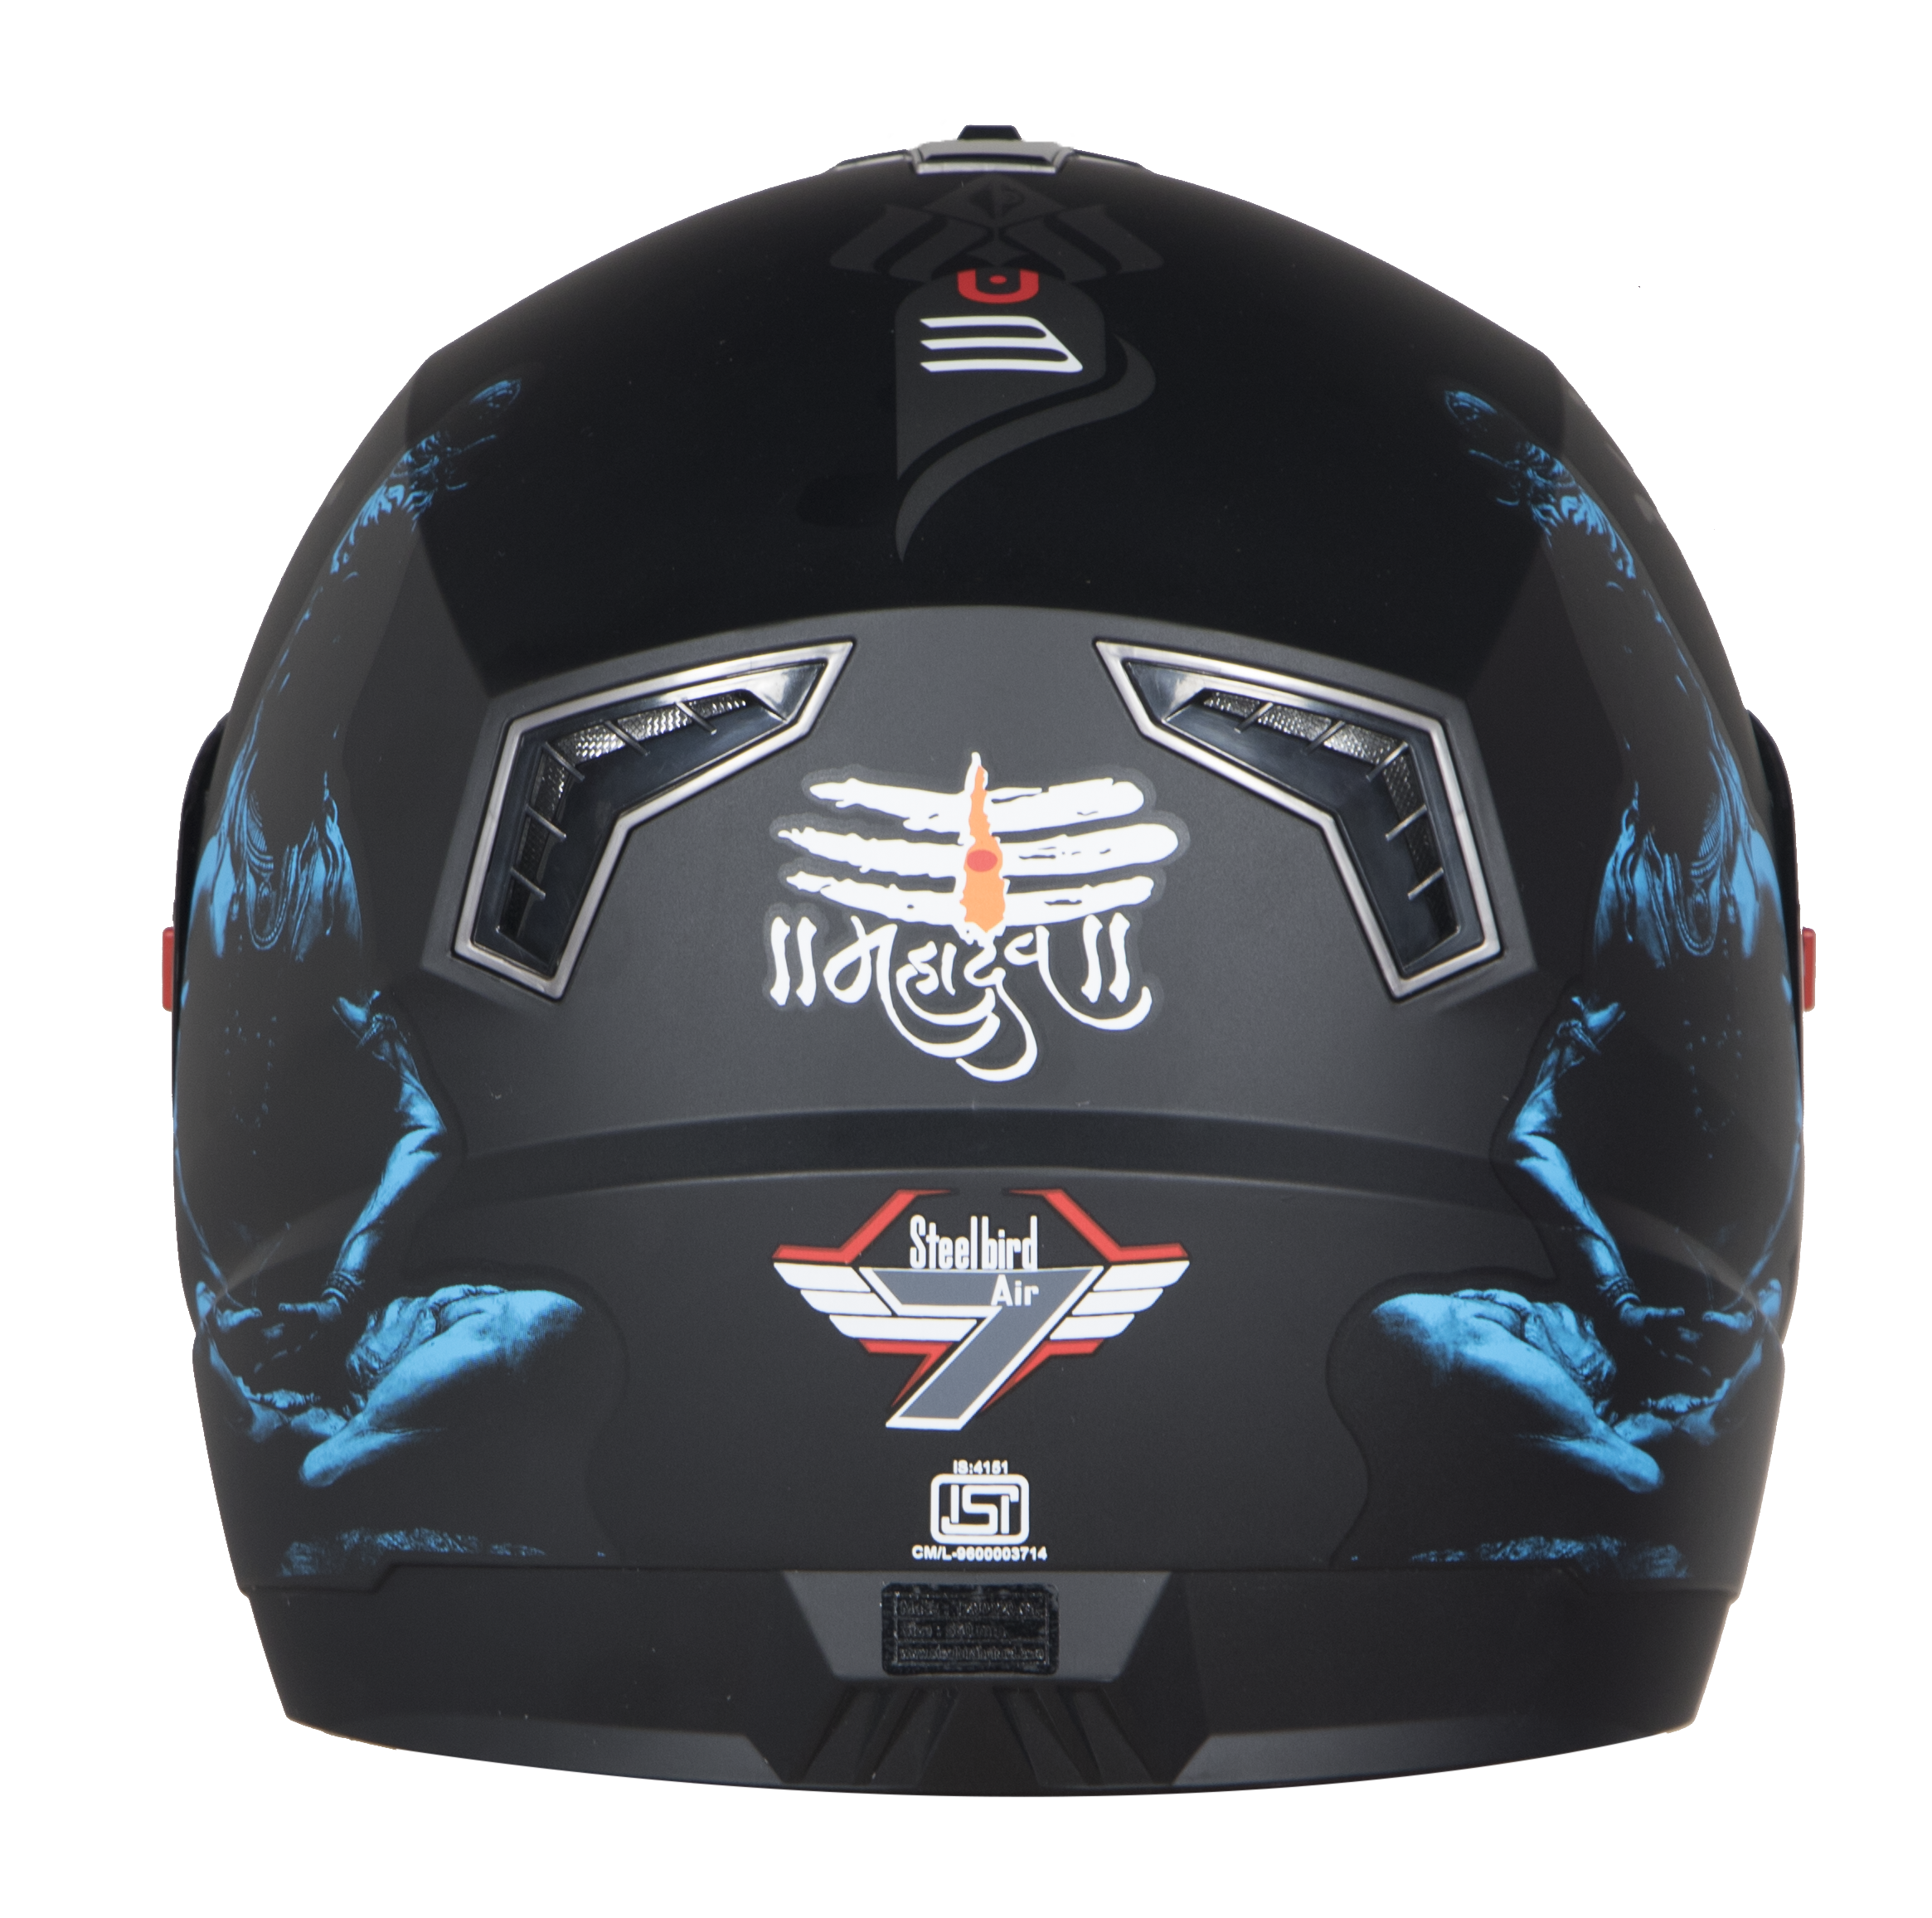 Steelbird SBA-1 Mahadev Full Face ISI Certified Graphic Helmet (Matt Black Blue With Chrome Blue Visor)